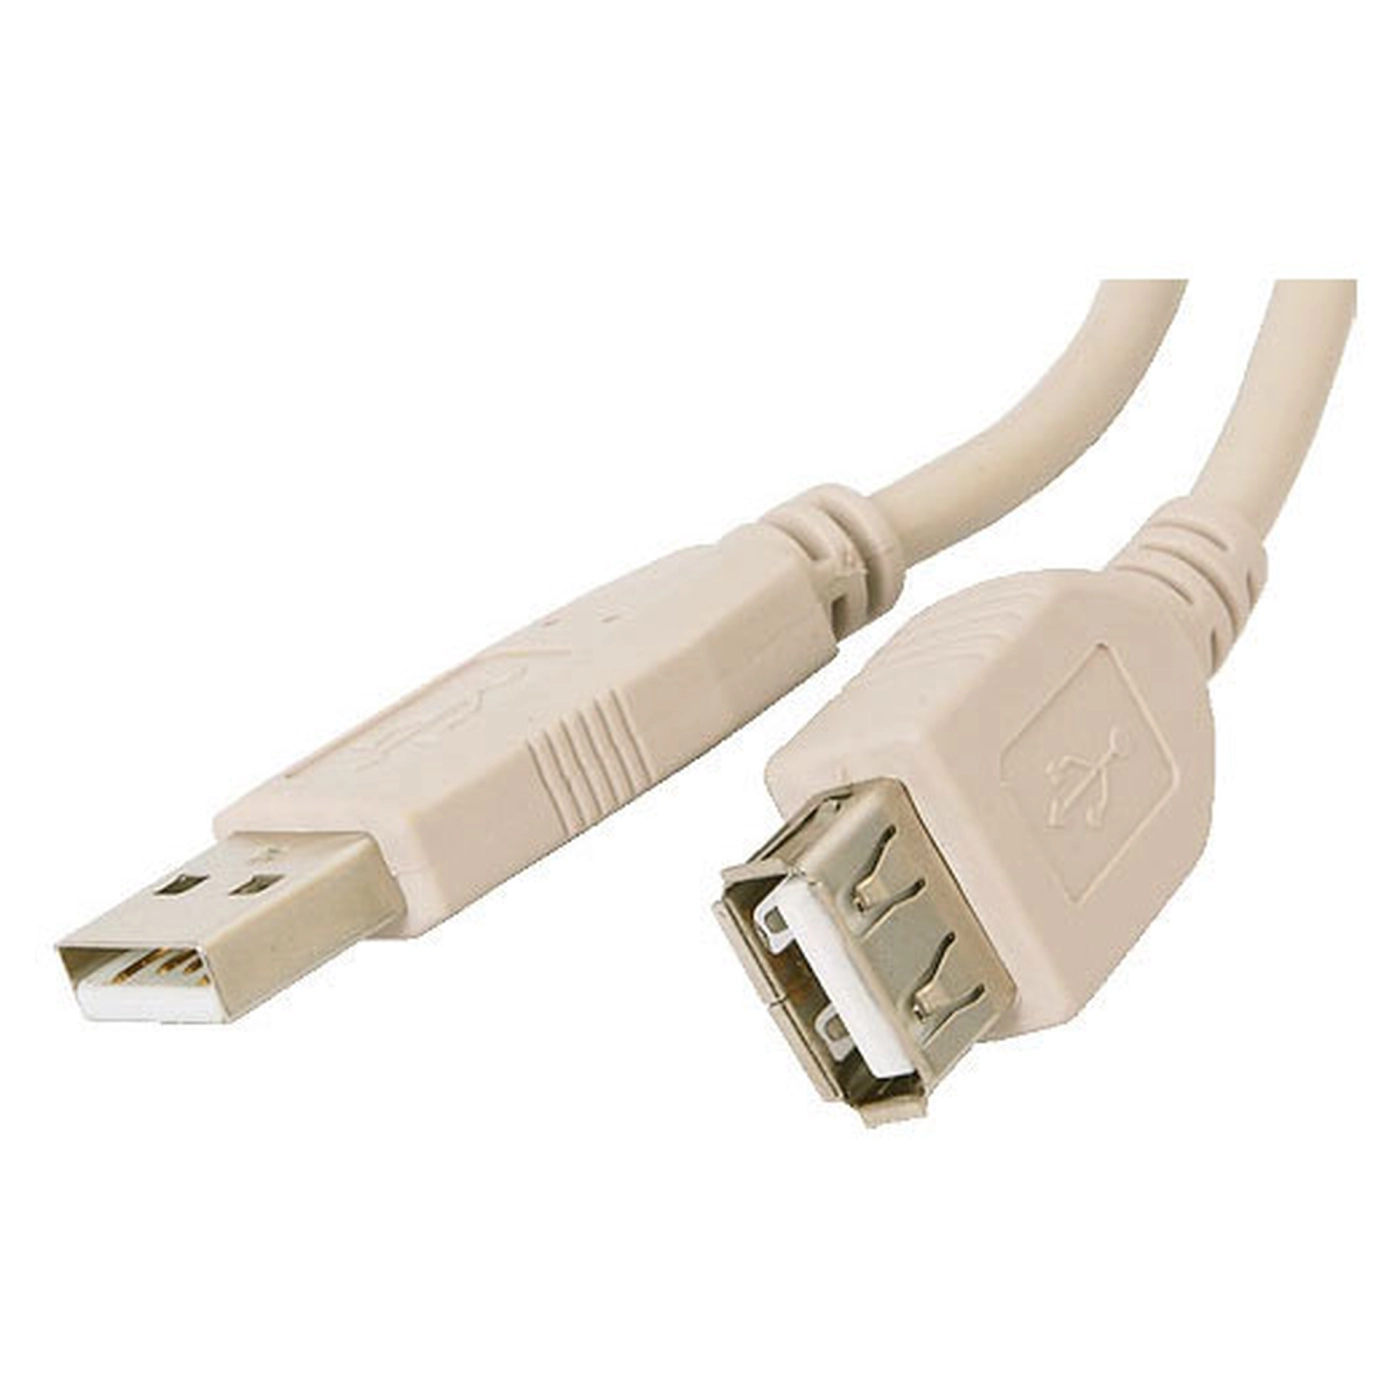 Купить Дата кабель USB 2.0 AM/AF Atcom (3790) - фото 1